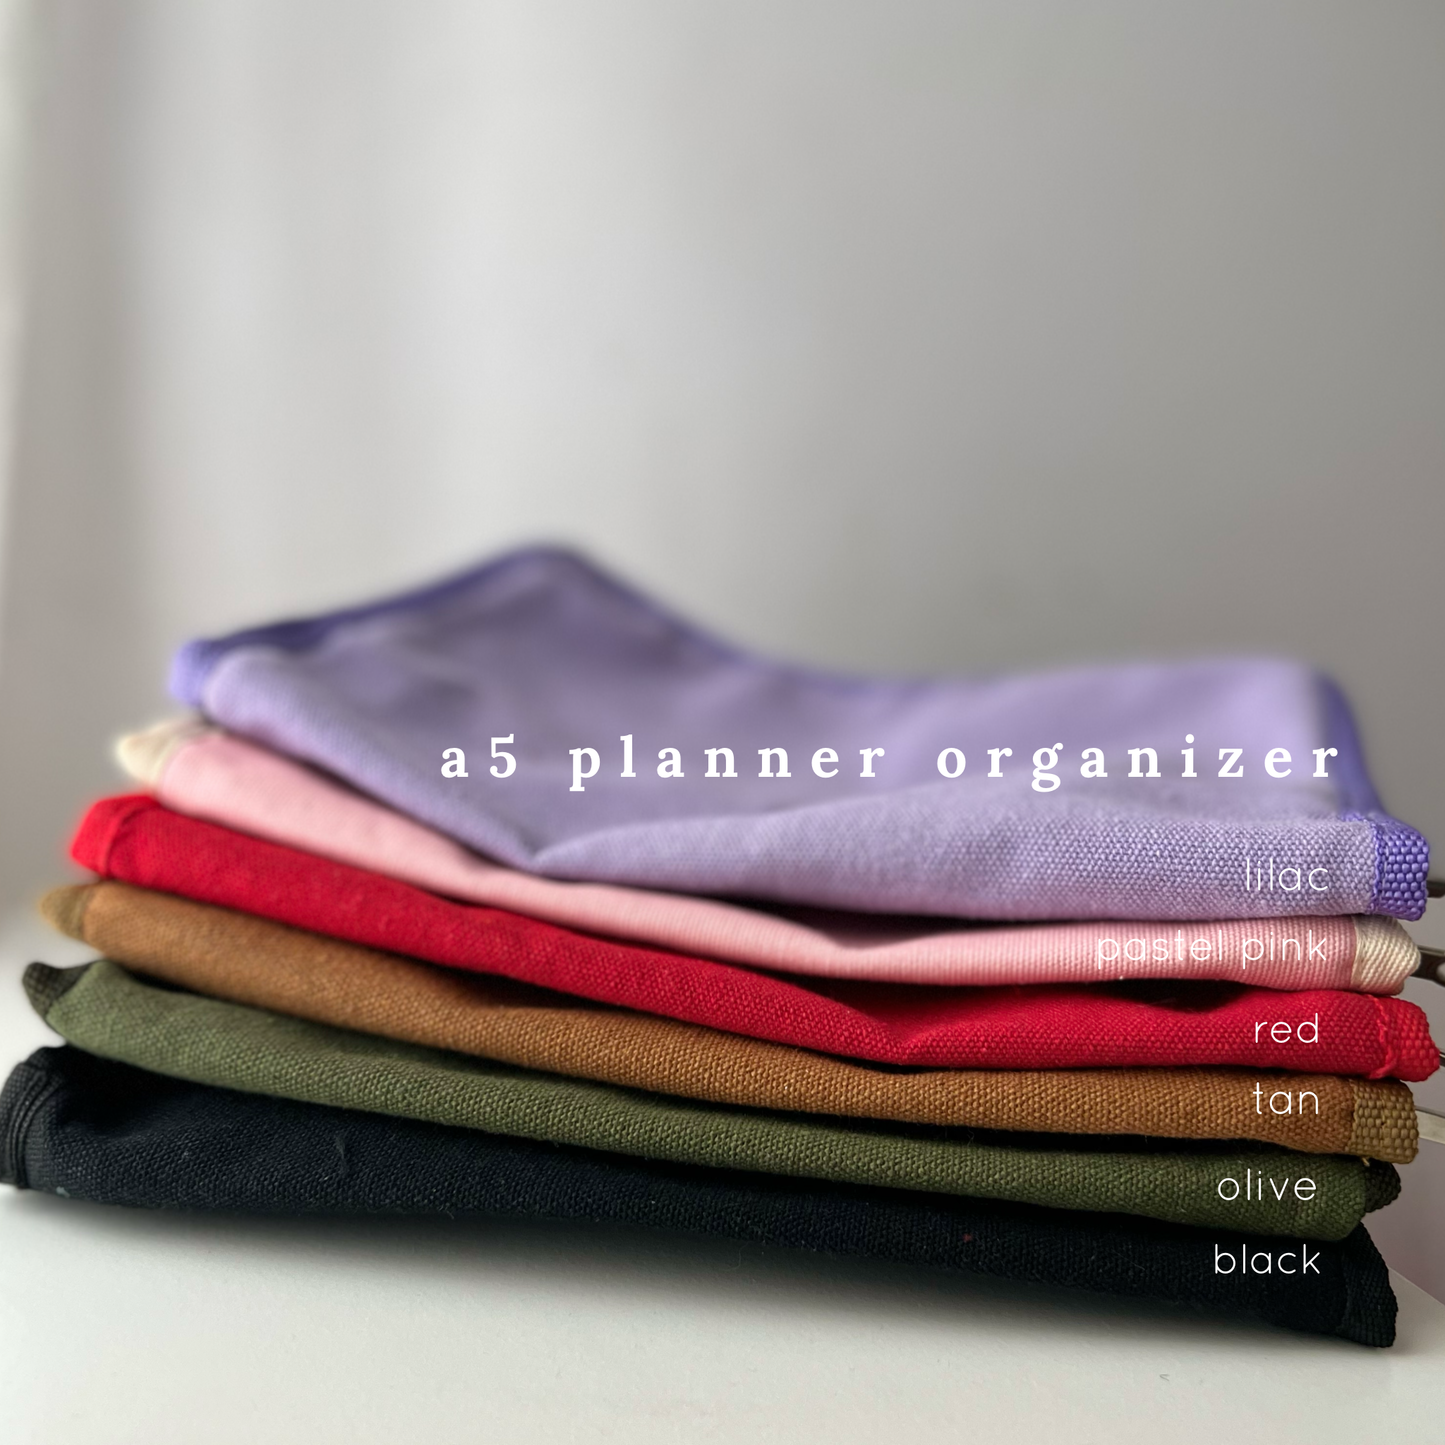 A5 Planner Organizer